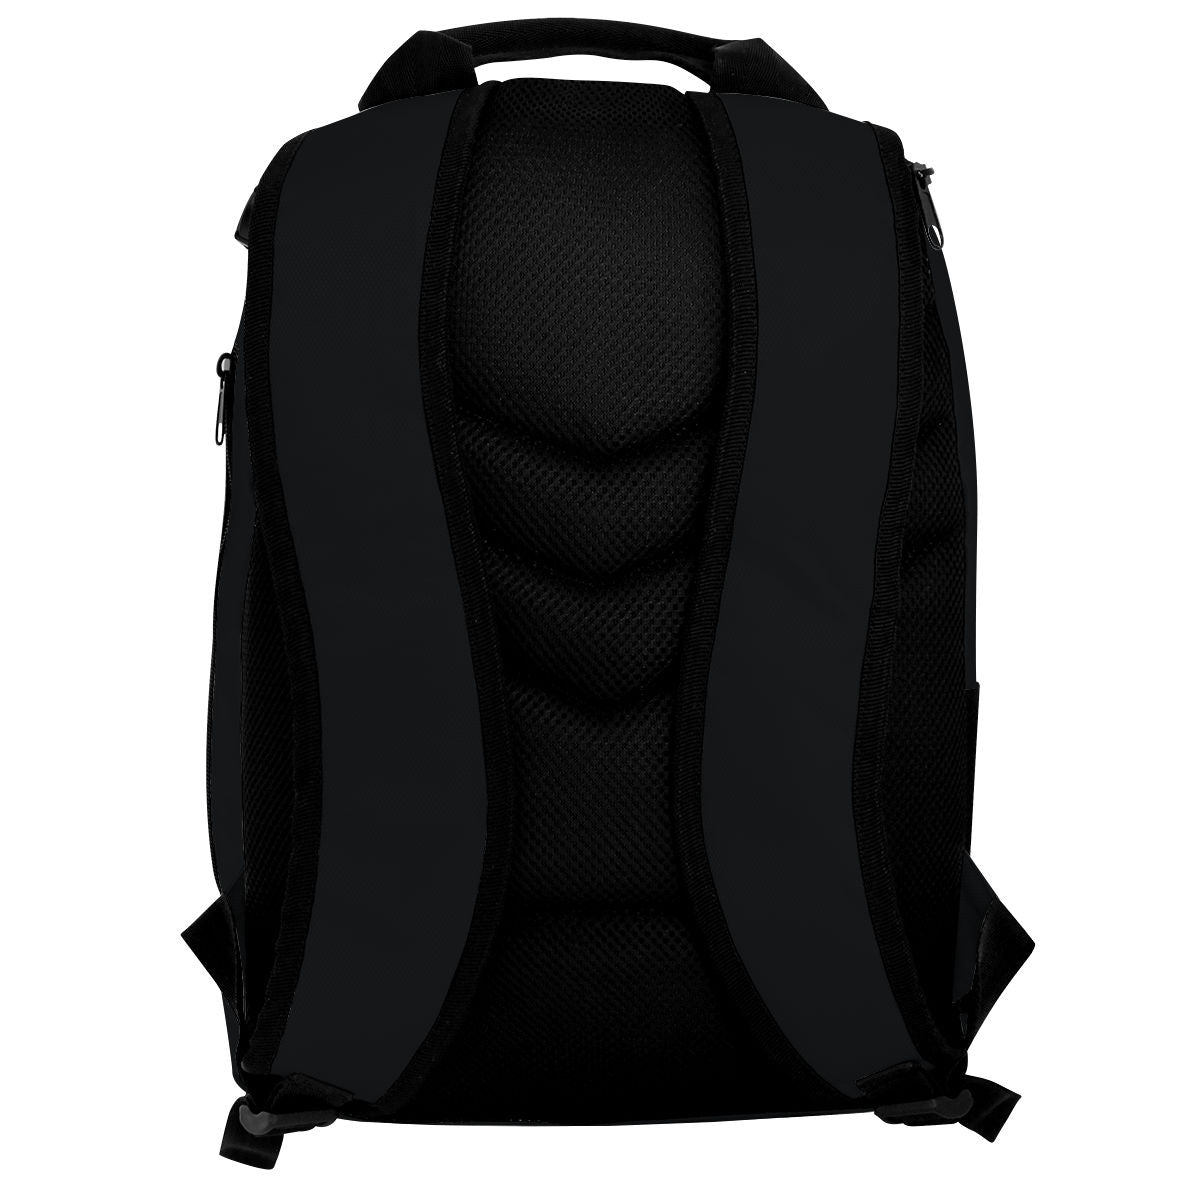 Mission Marlins - Backpack